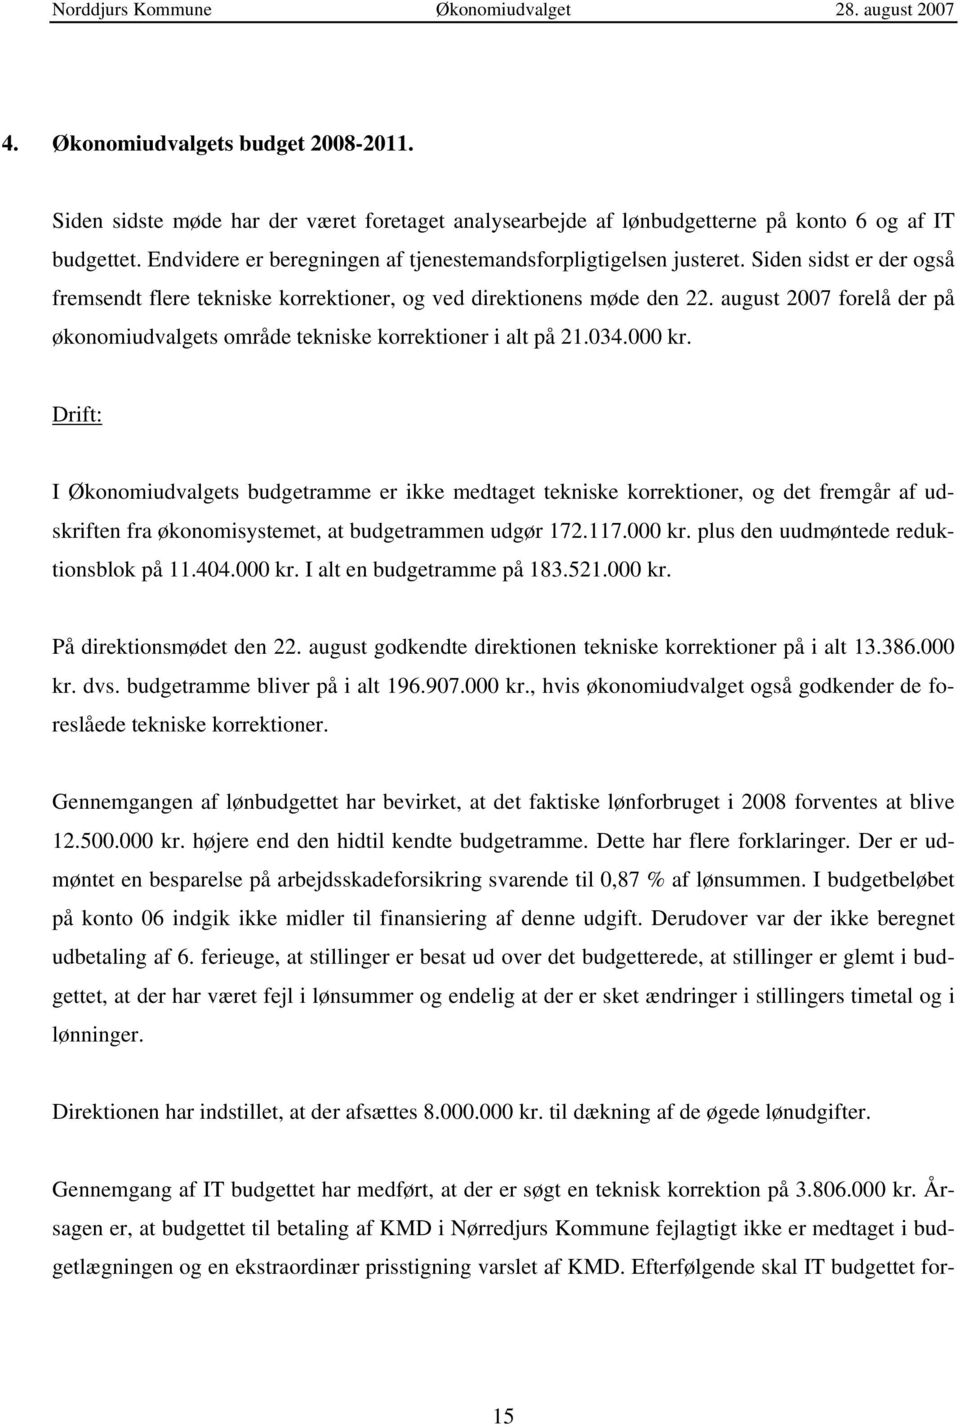 august 2007 forelå der på økonomiudvalgets område tekniske korrektioner i alt på 21.034.000 kr.